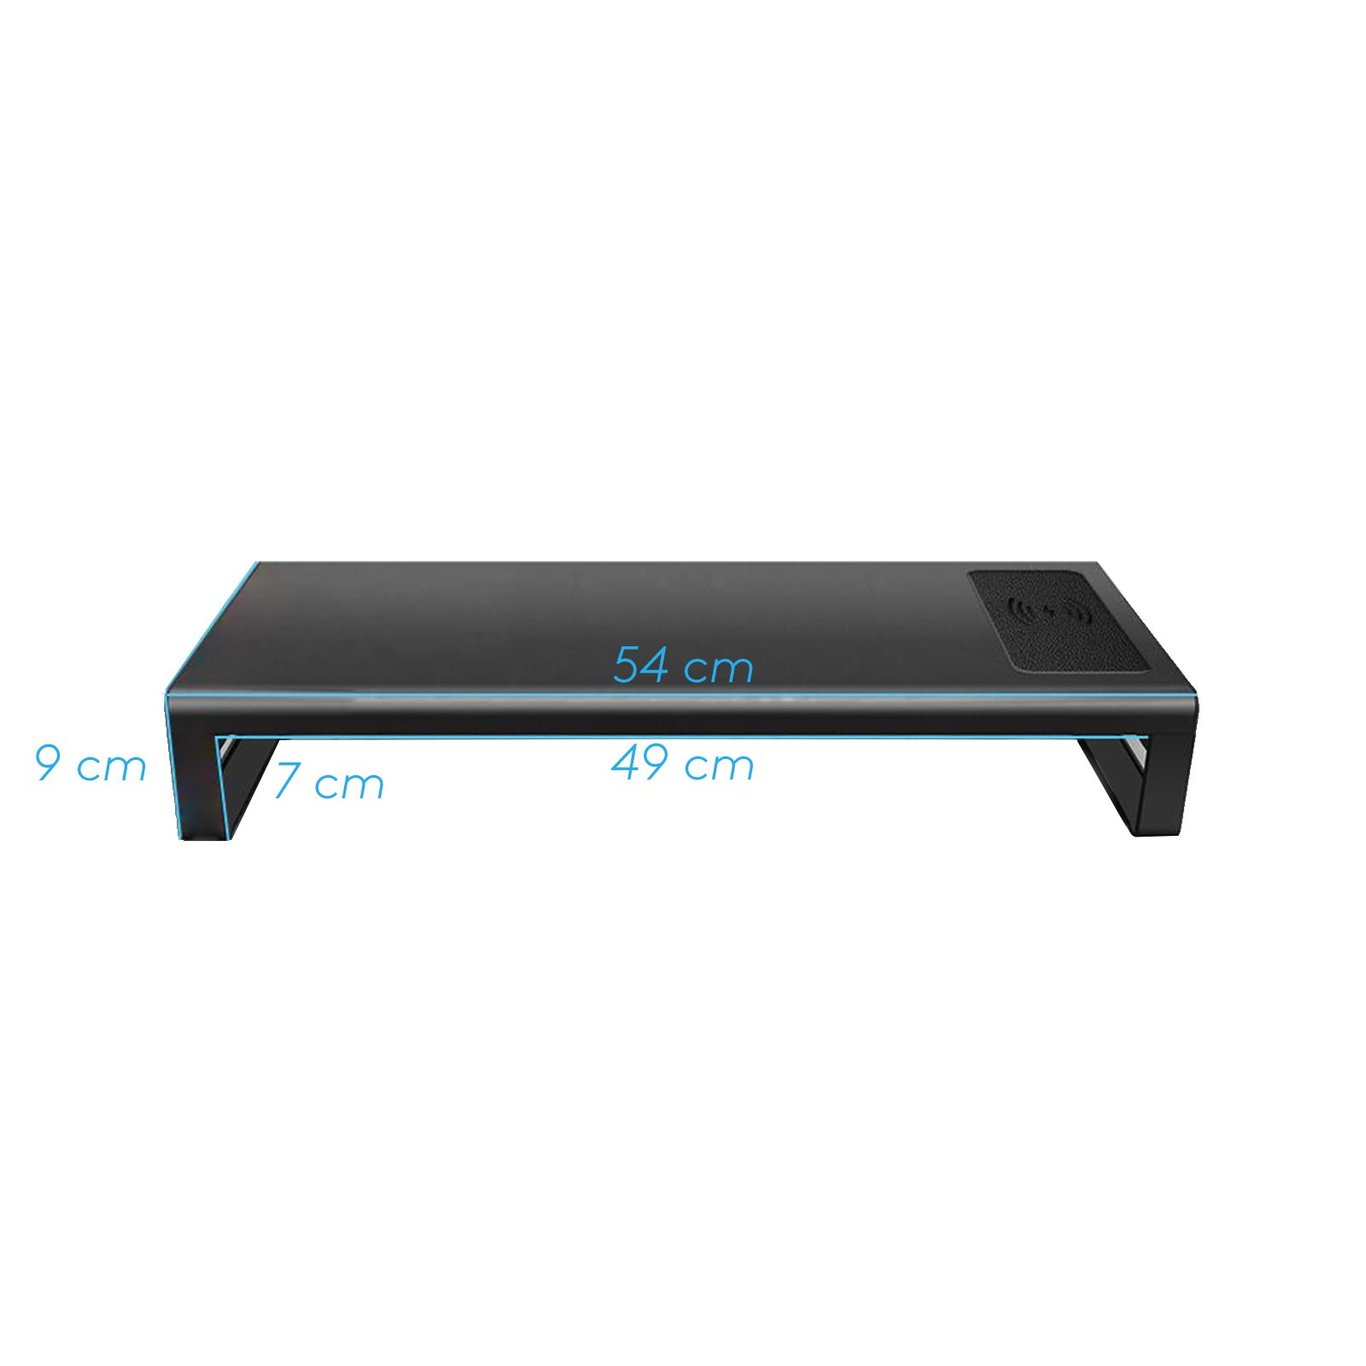 Zenox Monitor Riser 顯示器增高架 (4 Ports Usb 3.0 Hub w/ MAX 15W wireless charging)